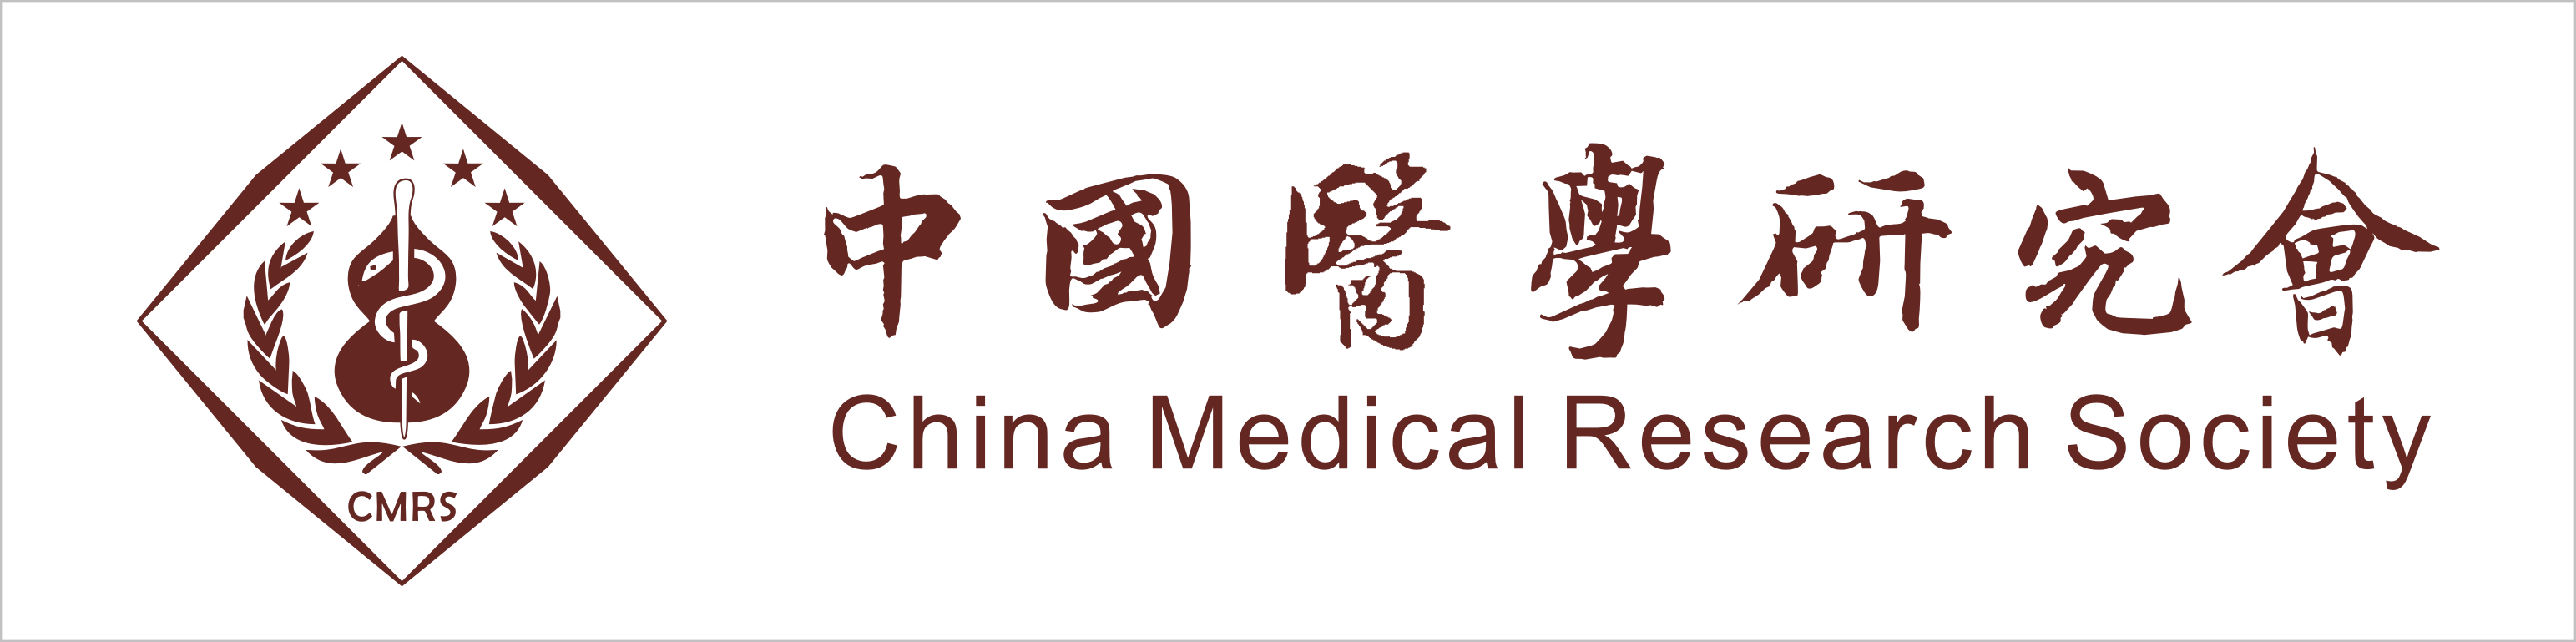 中國醫學研究會CI識別系統